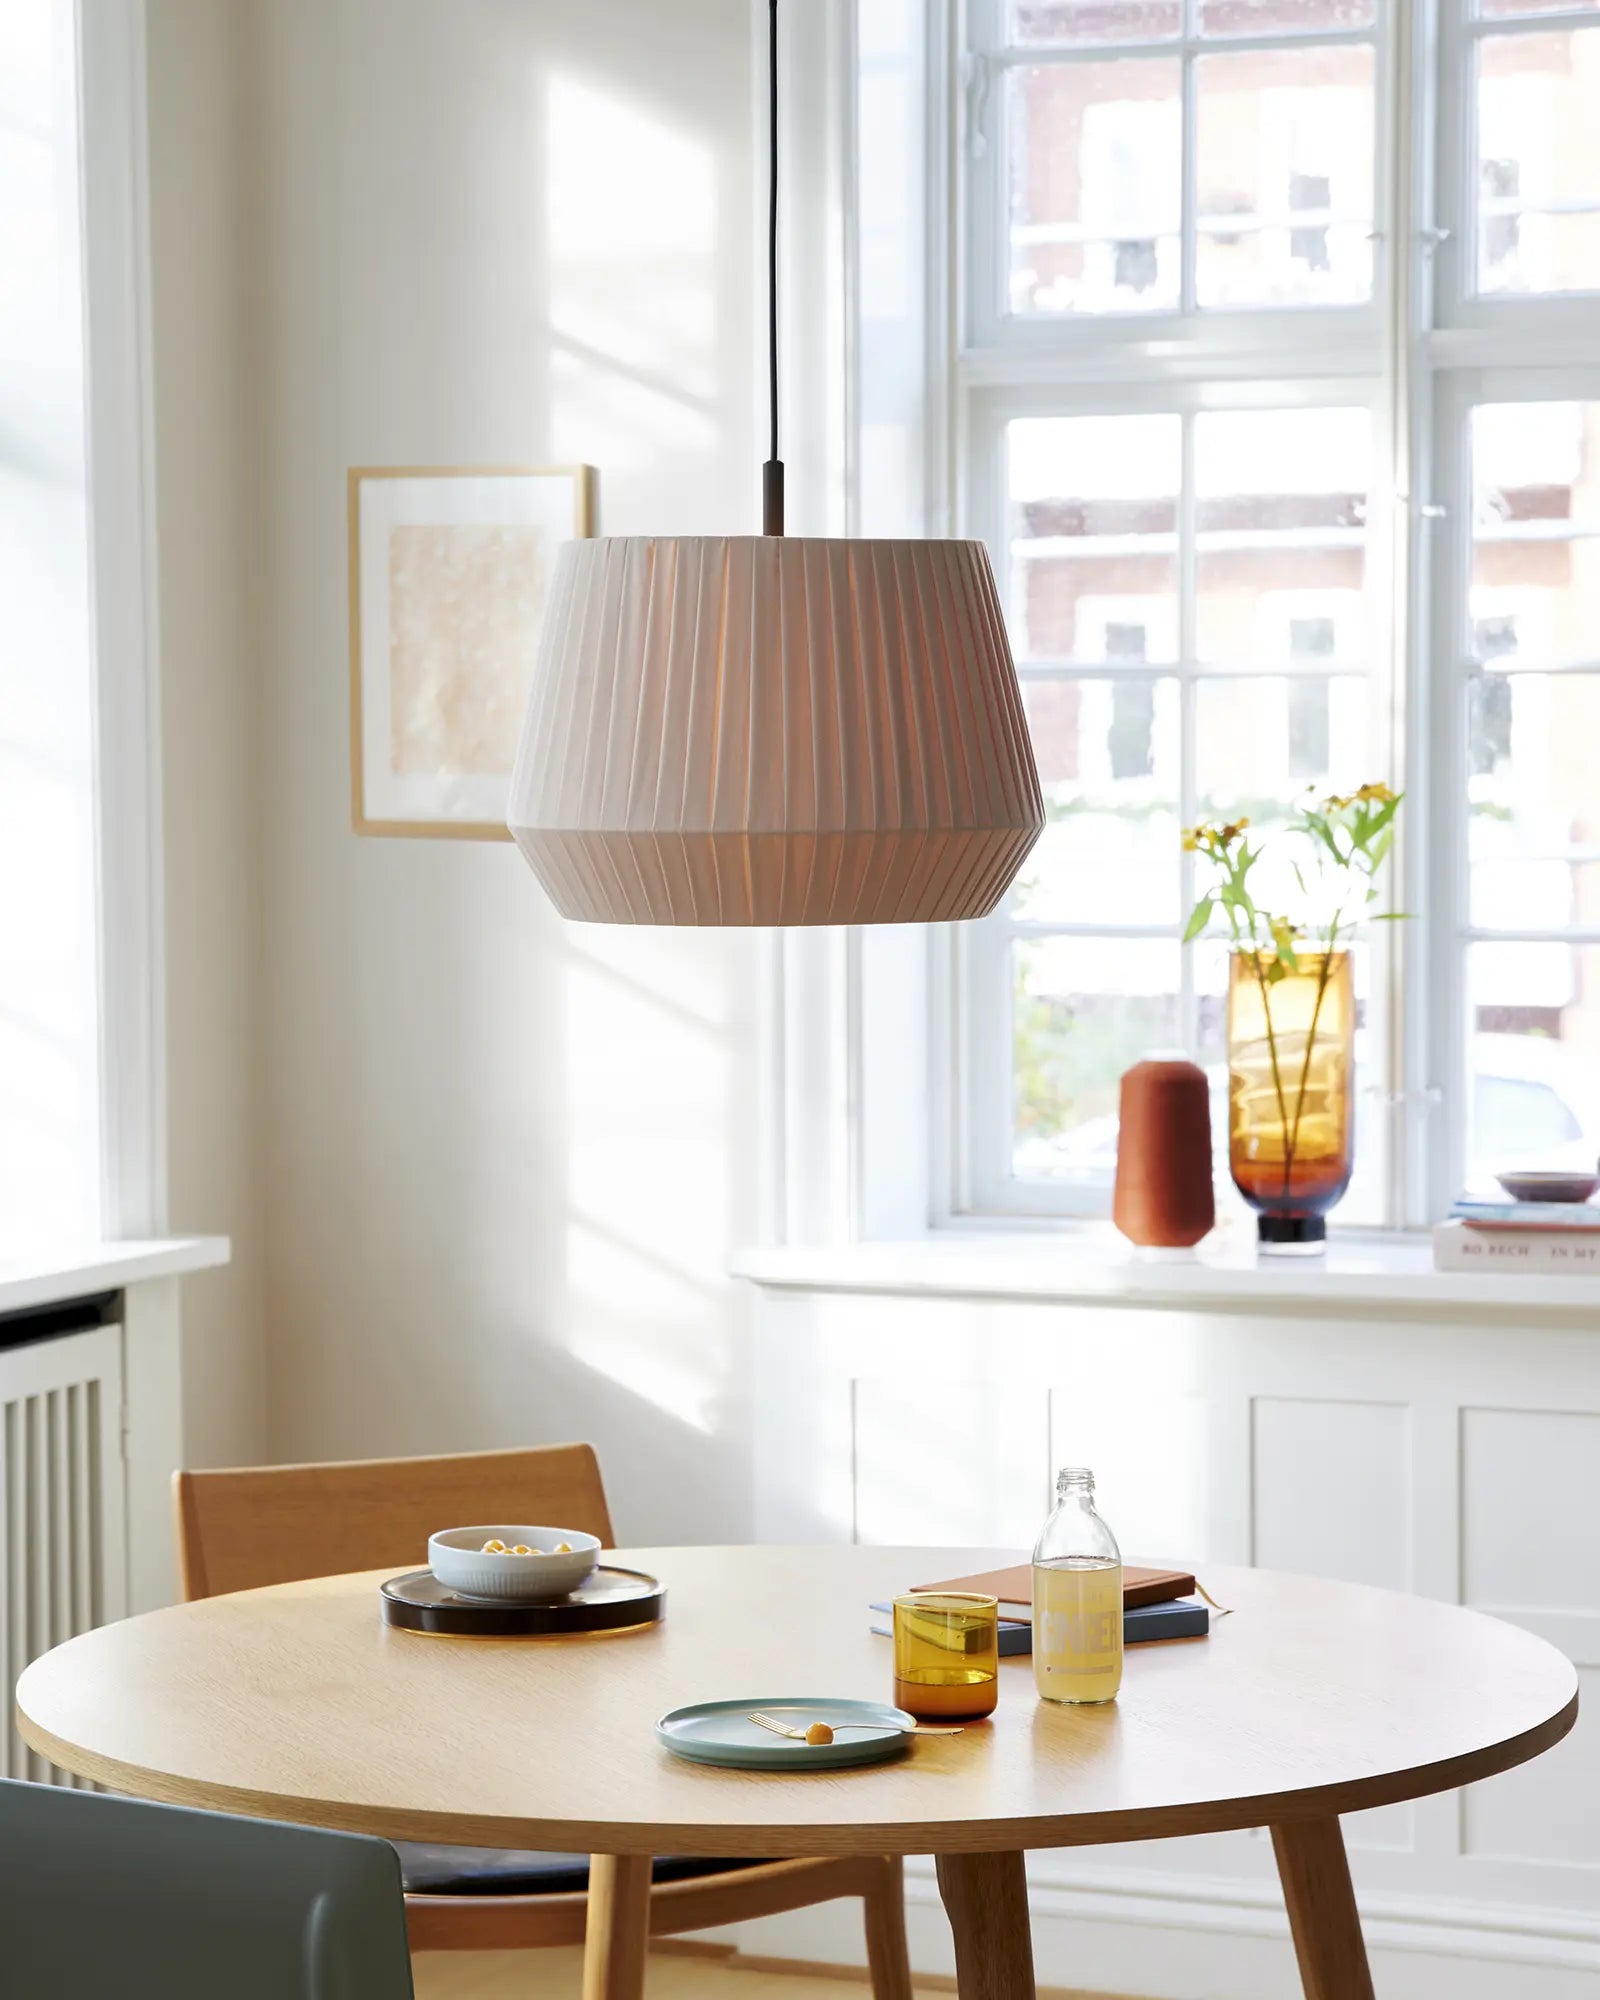 Dicte fabric scandinavian pendant light above a table